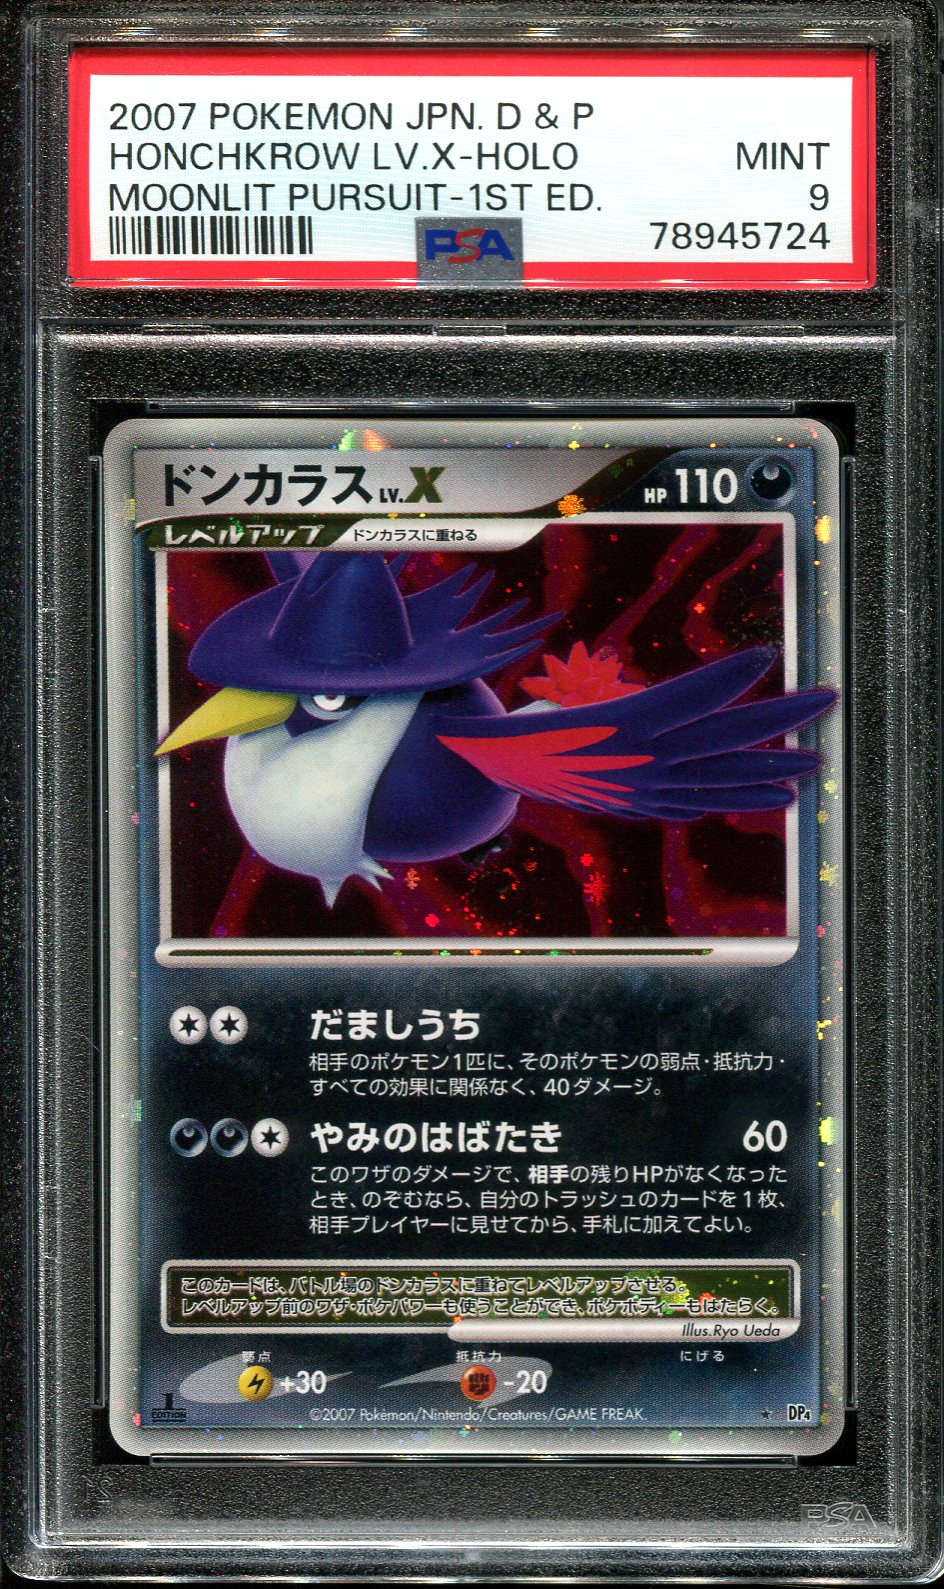 PSA 9 MINT Leafeon Lv. X Holo Dawn Dash DP4 Japanese 2007 Pokemon Card